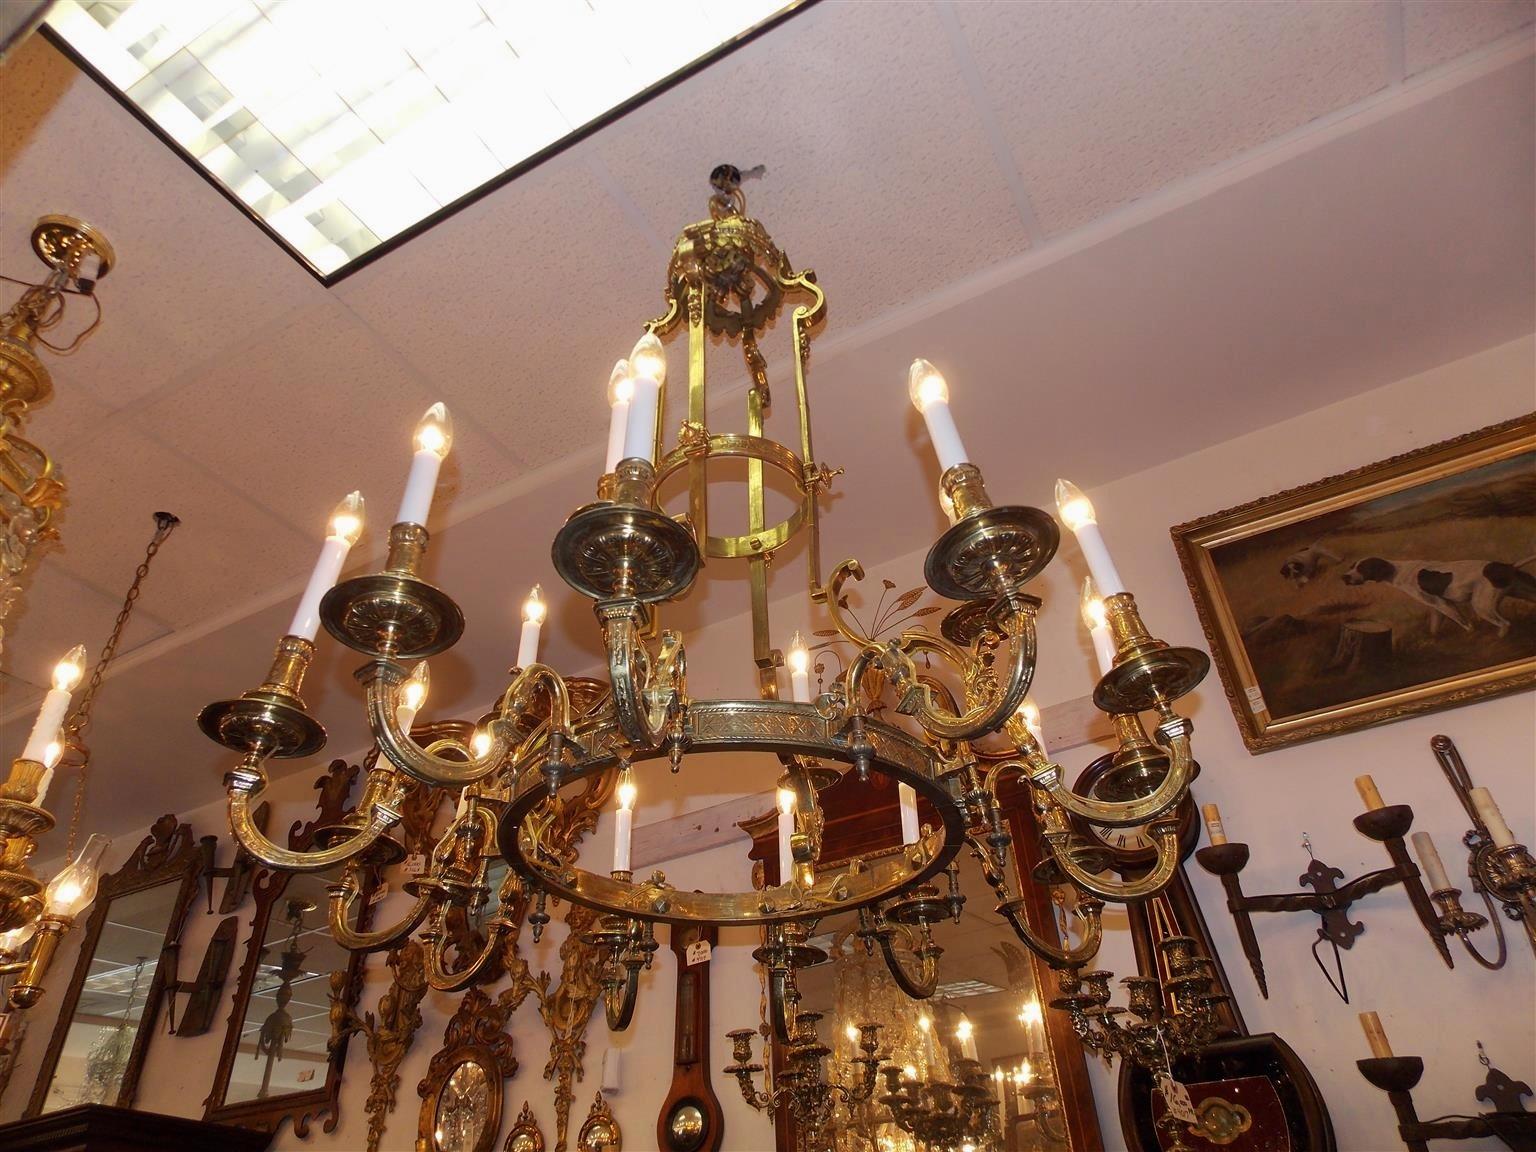 Lustre à seize lumières allongées à deux niveaux, en bronze français, avec un système à quatre poulies sous le fleuron de la coupole. Le lustre, qui était à l'origine alimenté par des bougies, a été électrifié. Début du 19e siècle.